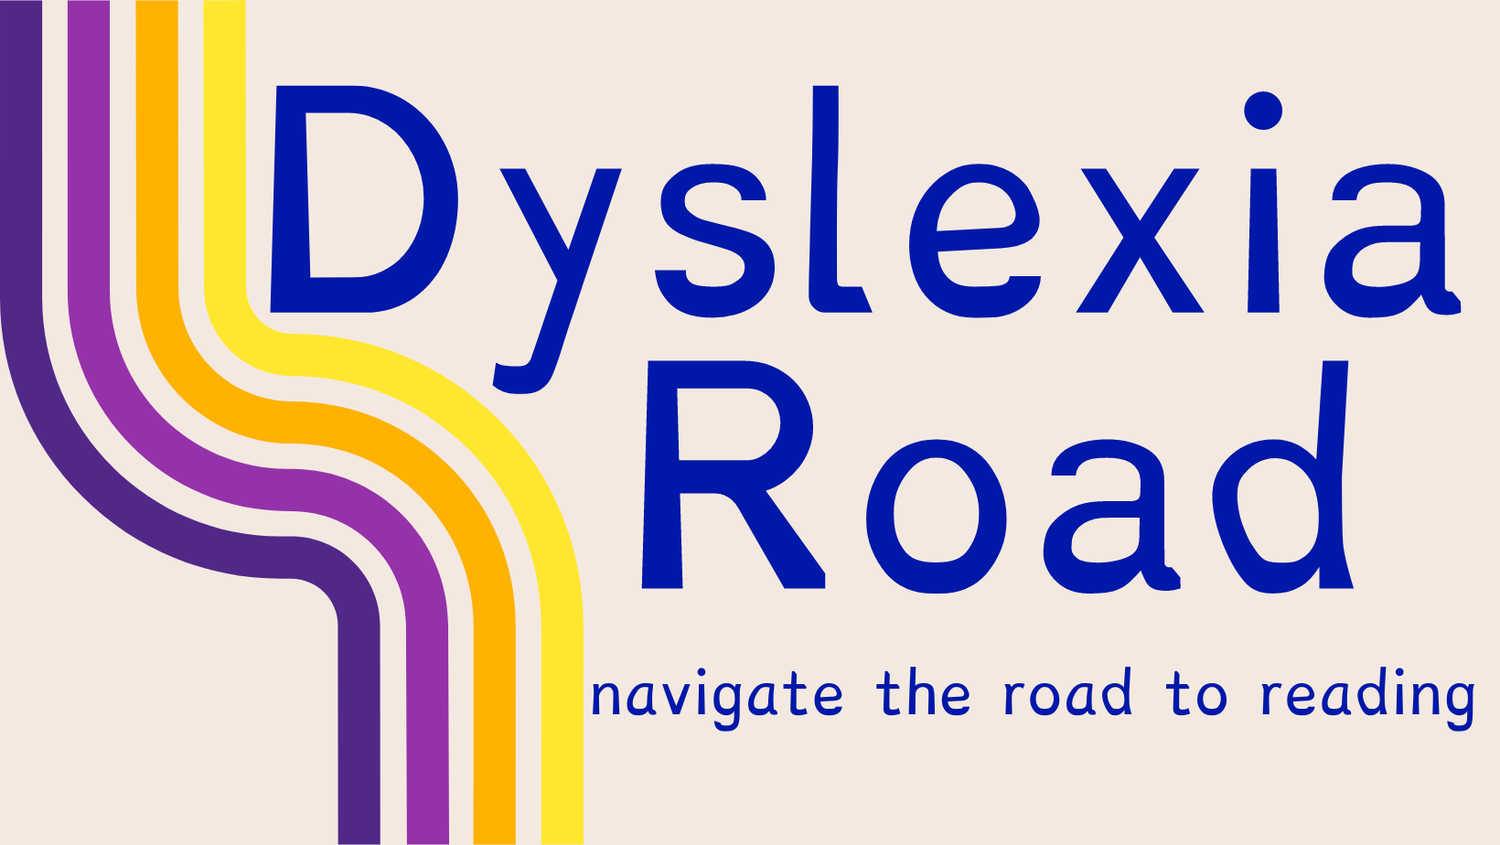 Dyslexia Road